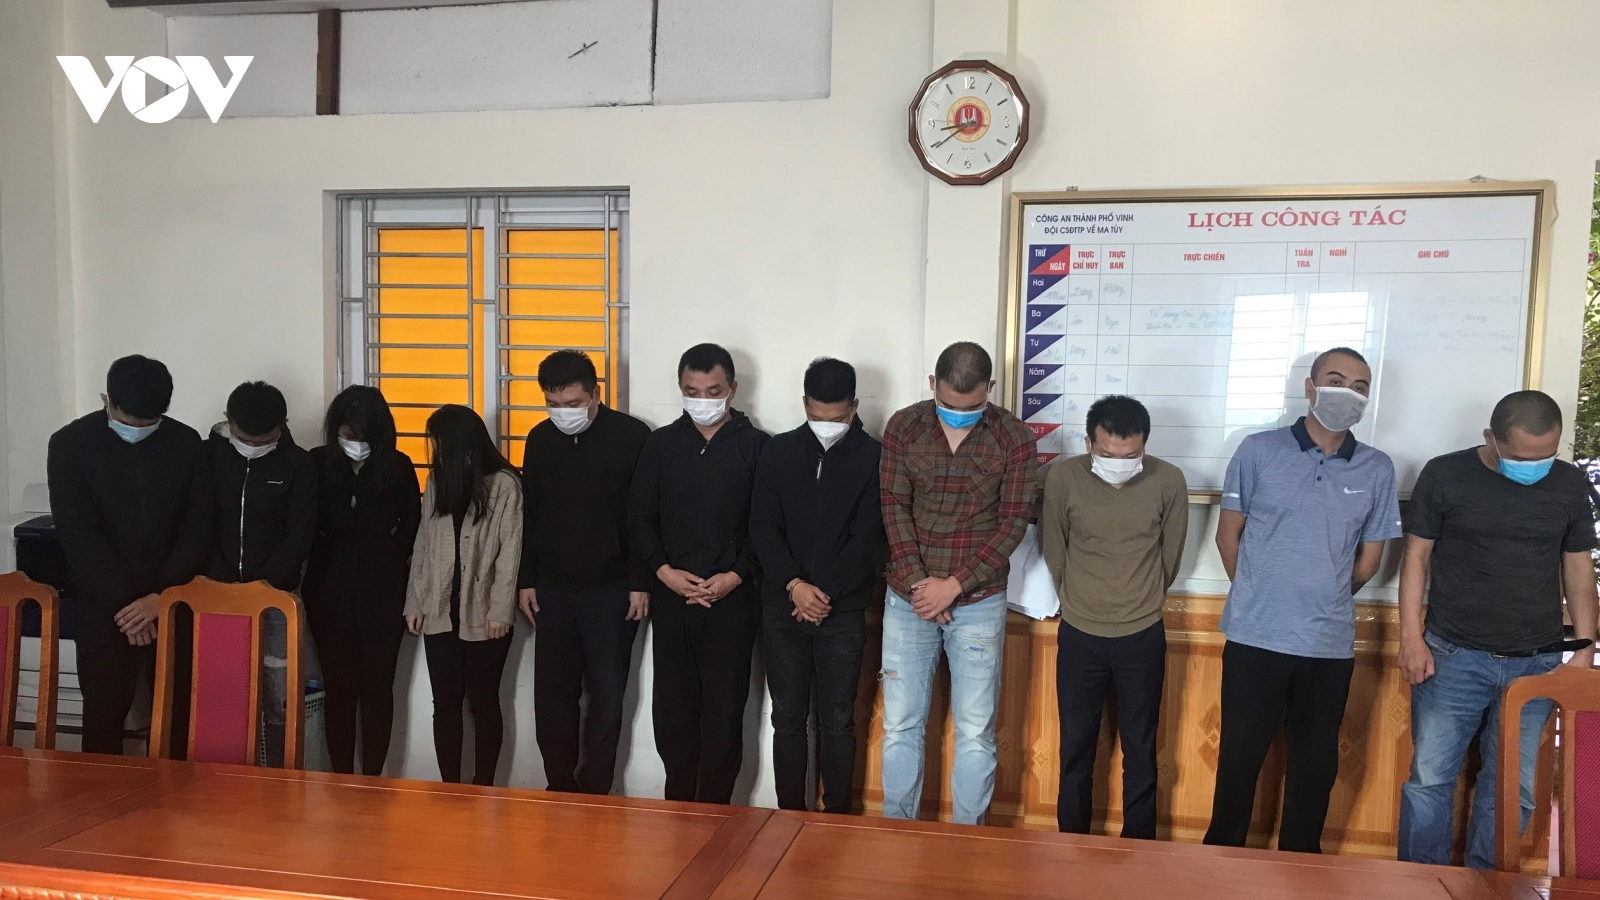 11 nam, nữ mở “tiệc ma túy” trong chung cư ở TP Vinh